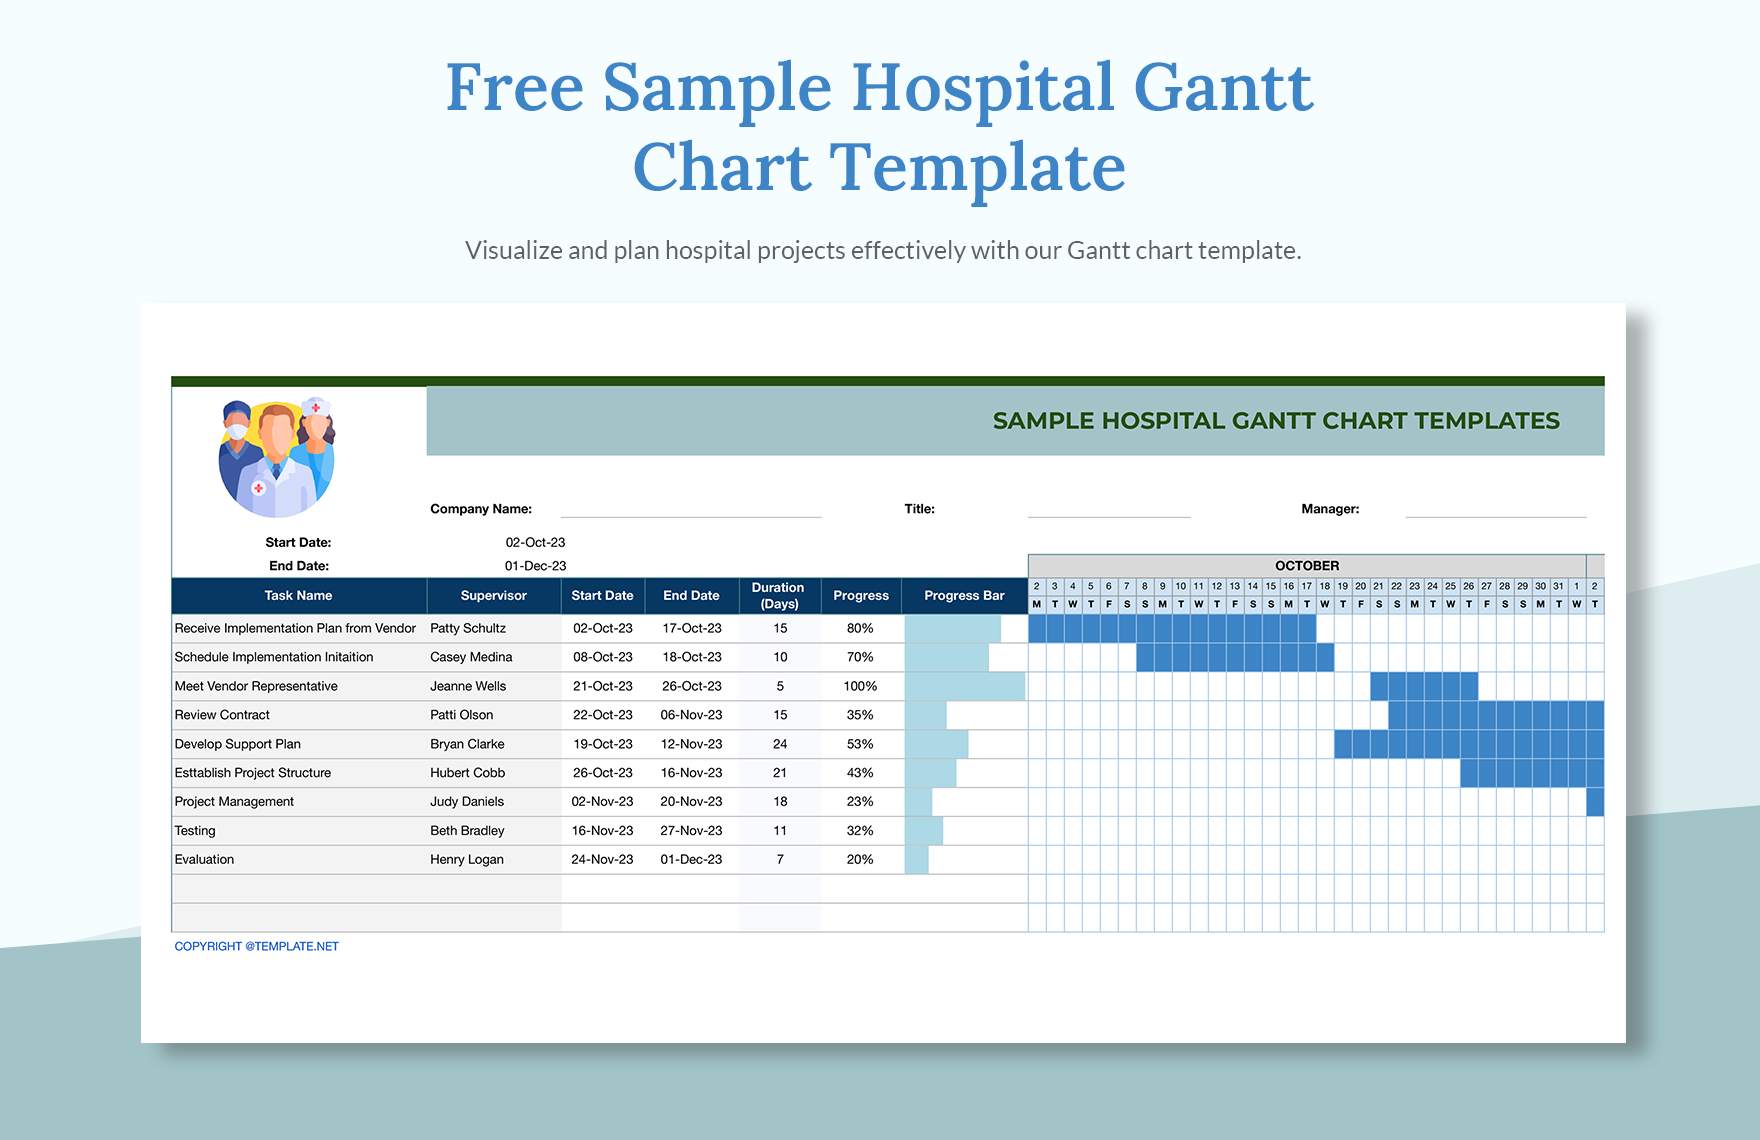 Sample Hospital Gantt Chart Template